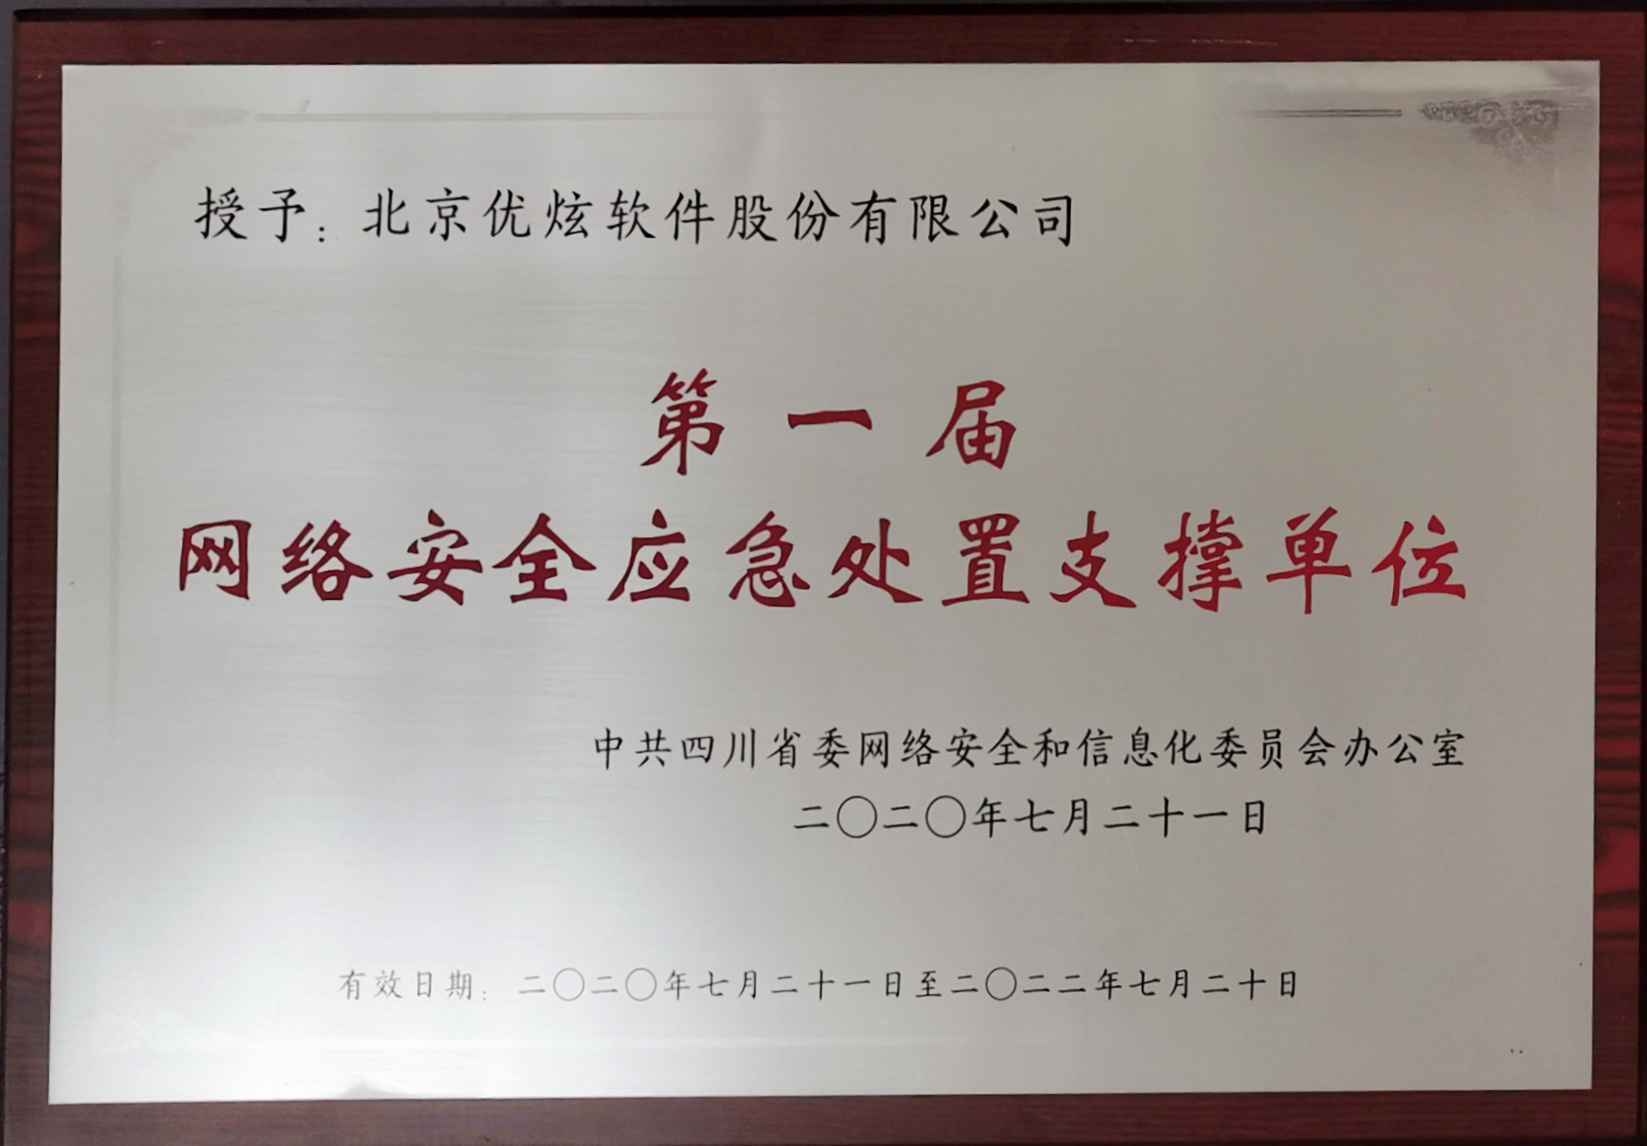 优炫软件荣获“第一届四川省网络安详应急处理支撑单元”